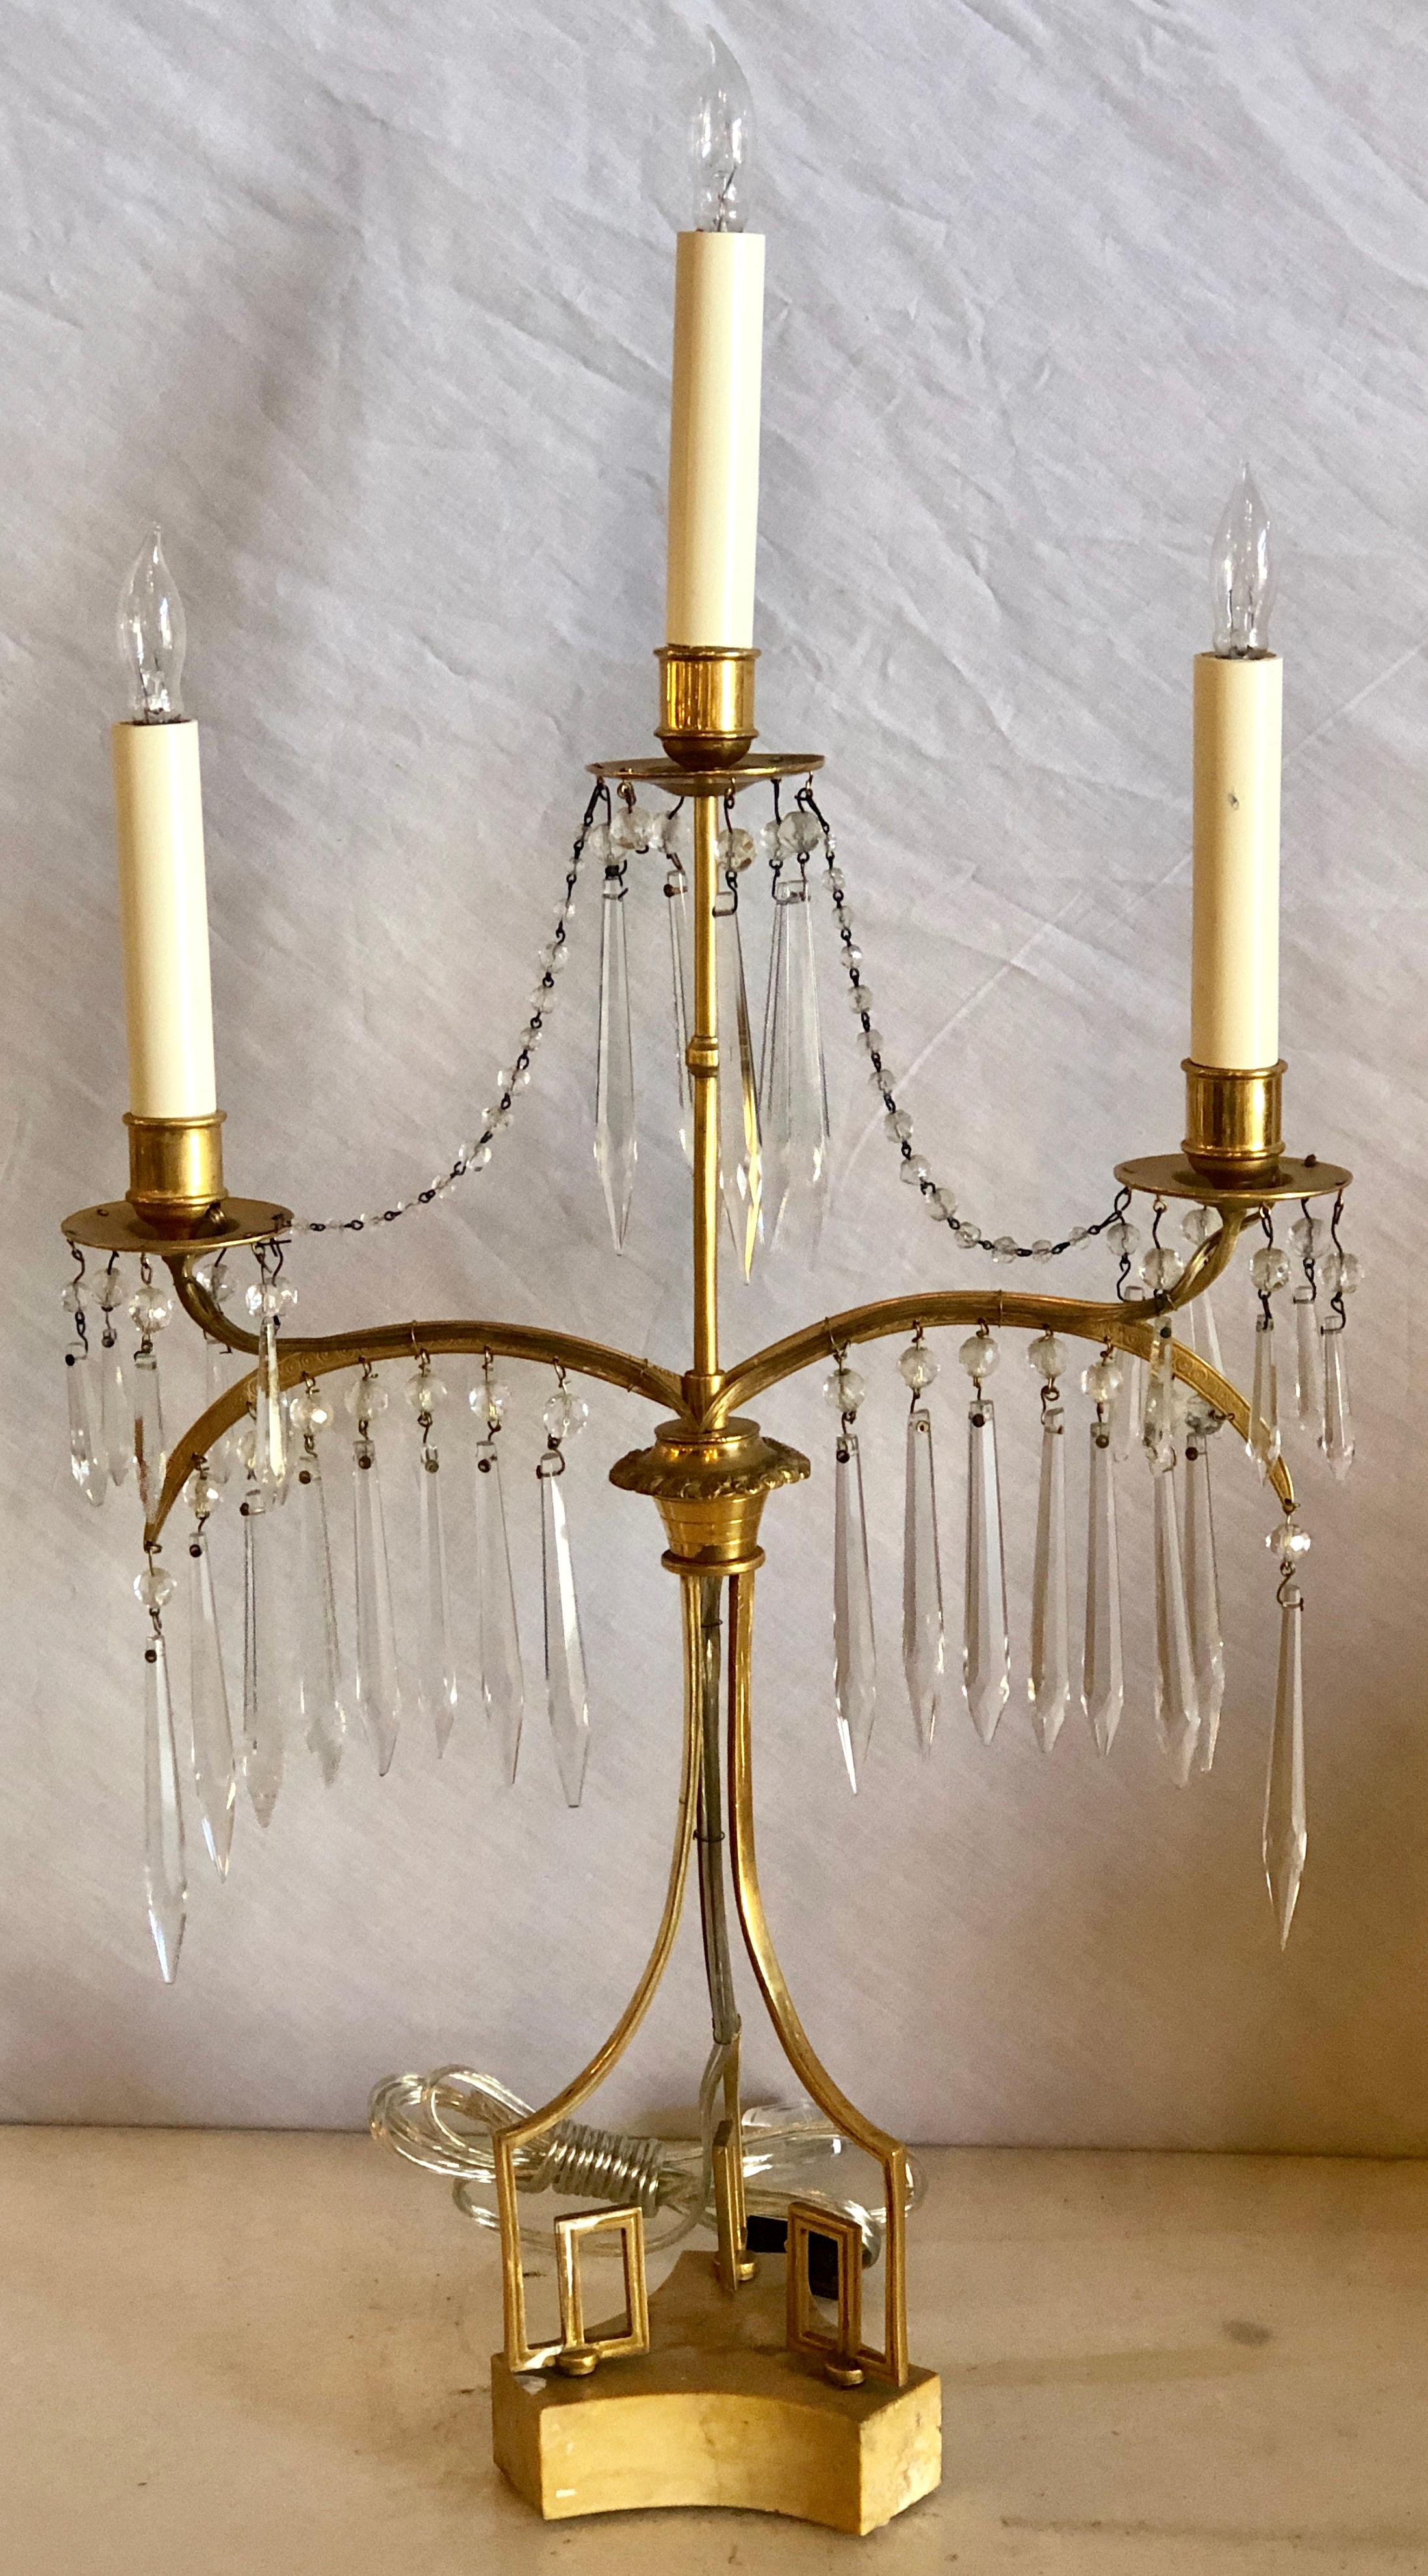 Paire de lampes de table russes néoclassiques en bronze doré du XIXe siècle. Ces lampes de table élégantes et stylées sont faites dans le style candélabre avec trois lumières avec des cristaux finement taillés en main des corps minces finement